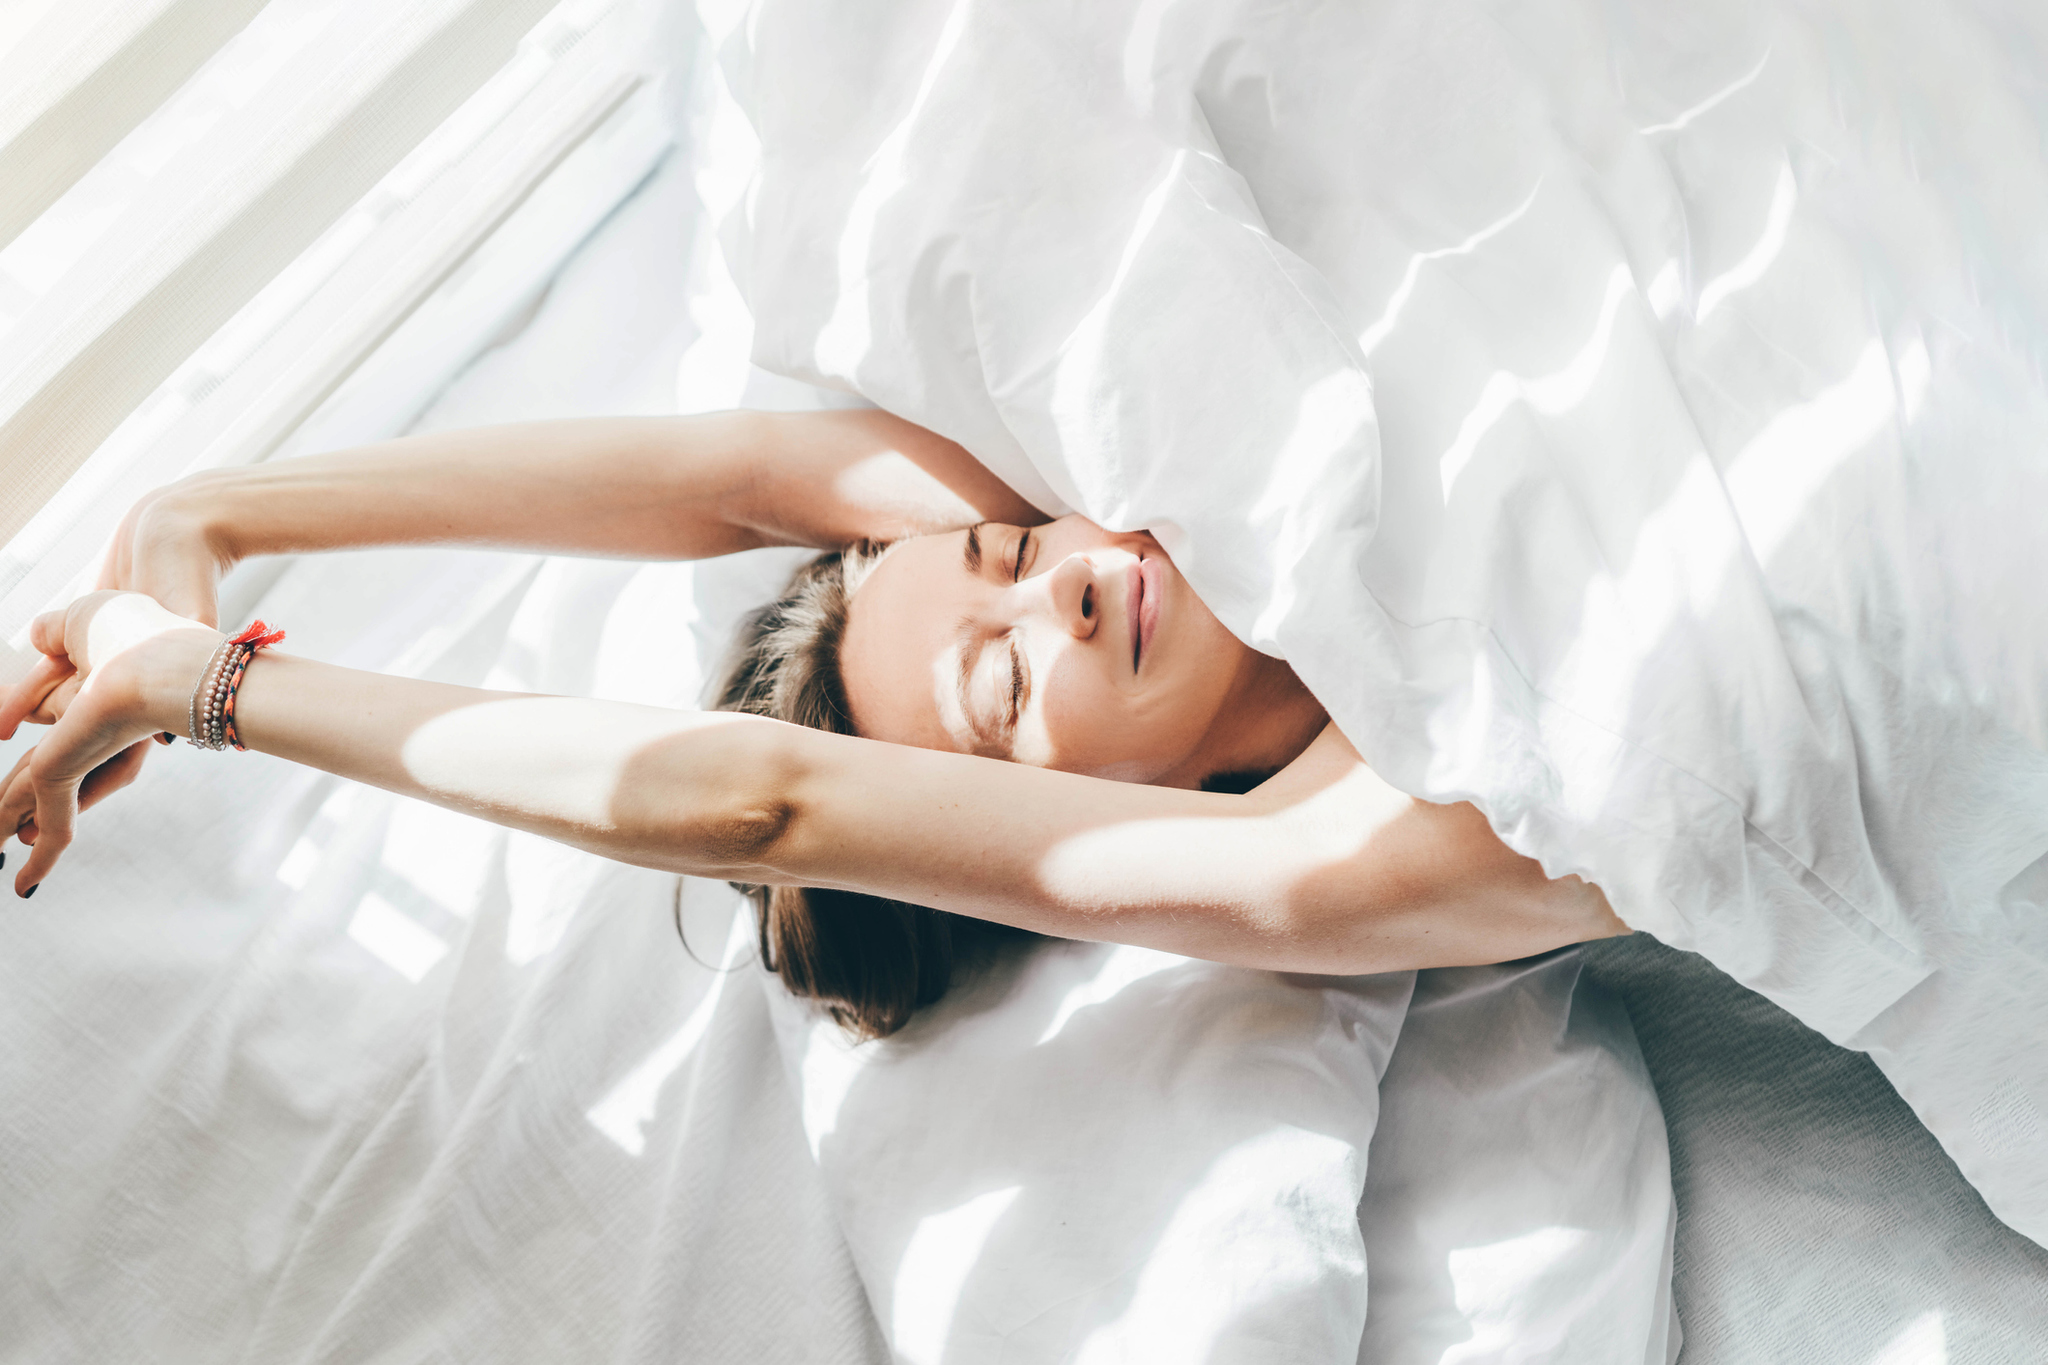 con estas técnicas de relajación para dormir alejarás la pesadilla del insomnio